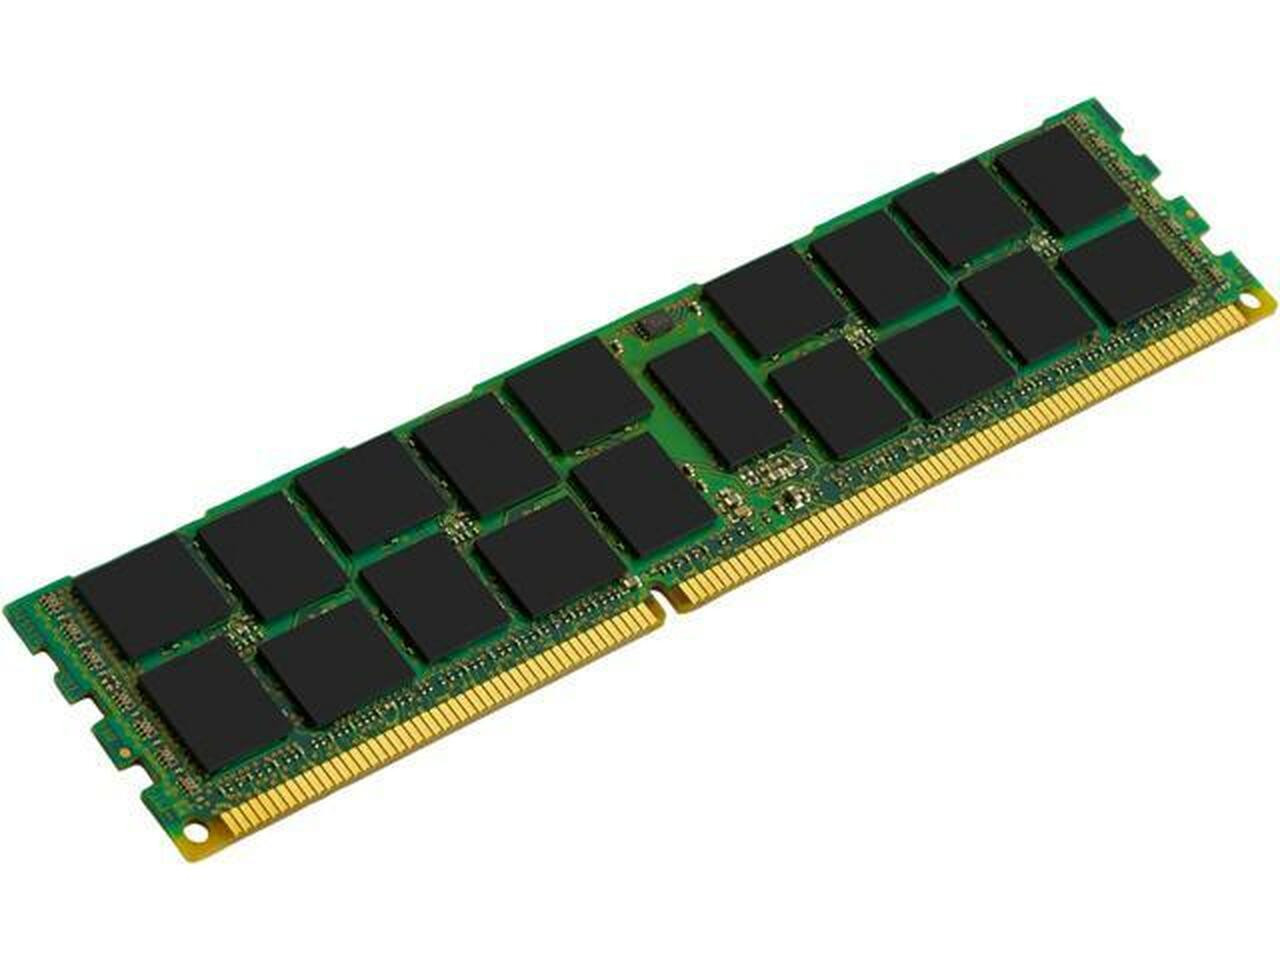 Netpatibles 4GB DDR3 SDRAM Memory Module - MEMDR340LHL03ER16NPM